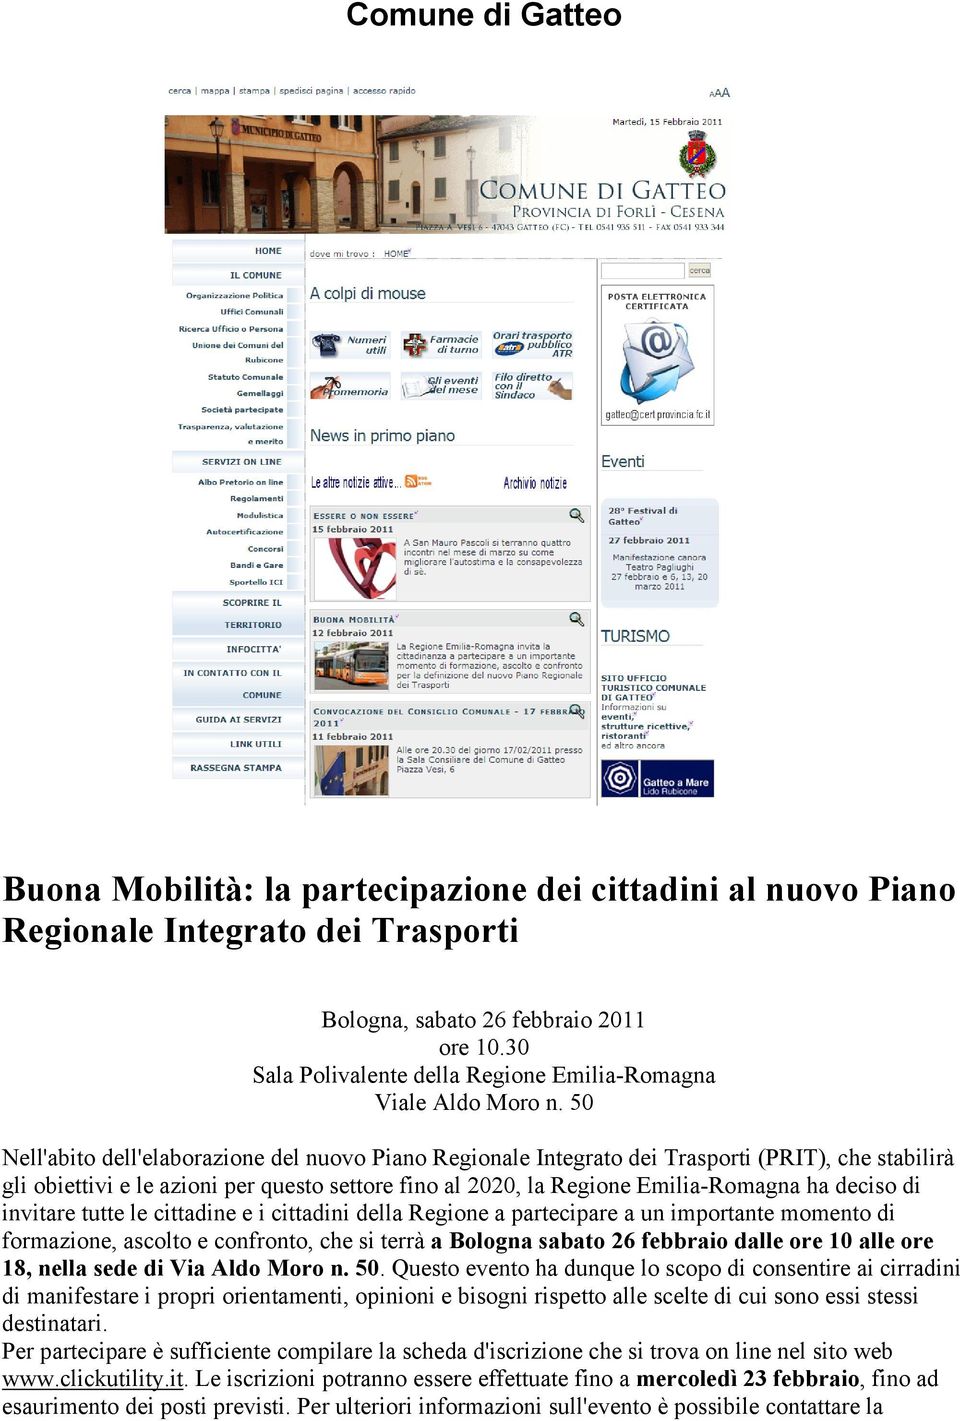 50 Nell'abito dell'elaborazione del nuovo Piano Regionale Integrato dei Trasporti (PRIT), che stabilirà gli obiettivi e le azioni per questo settore fino al 2020, la Regione Emilia-Romagna ha deciso